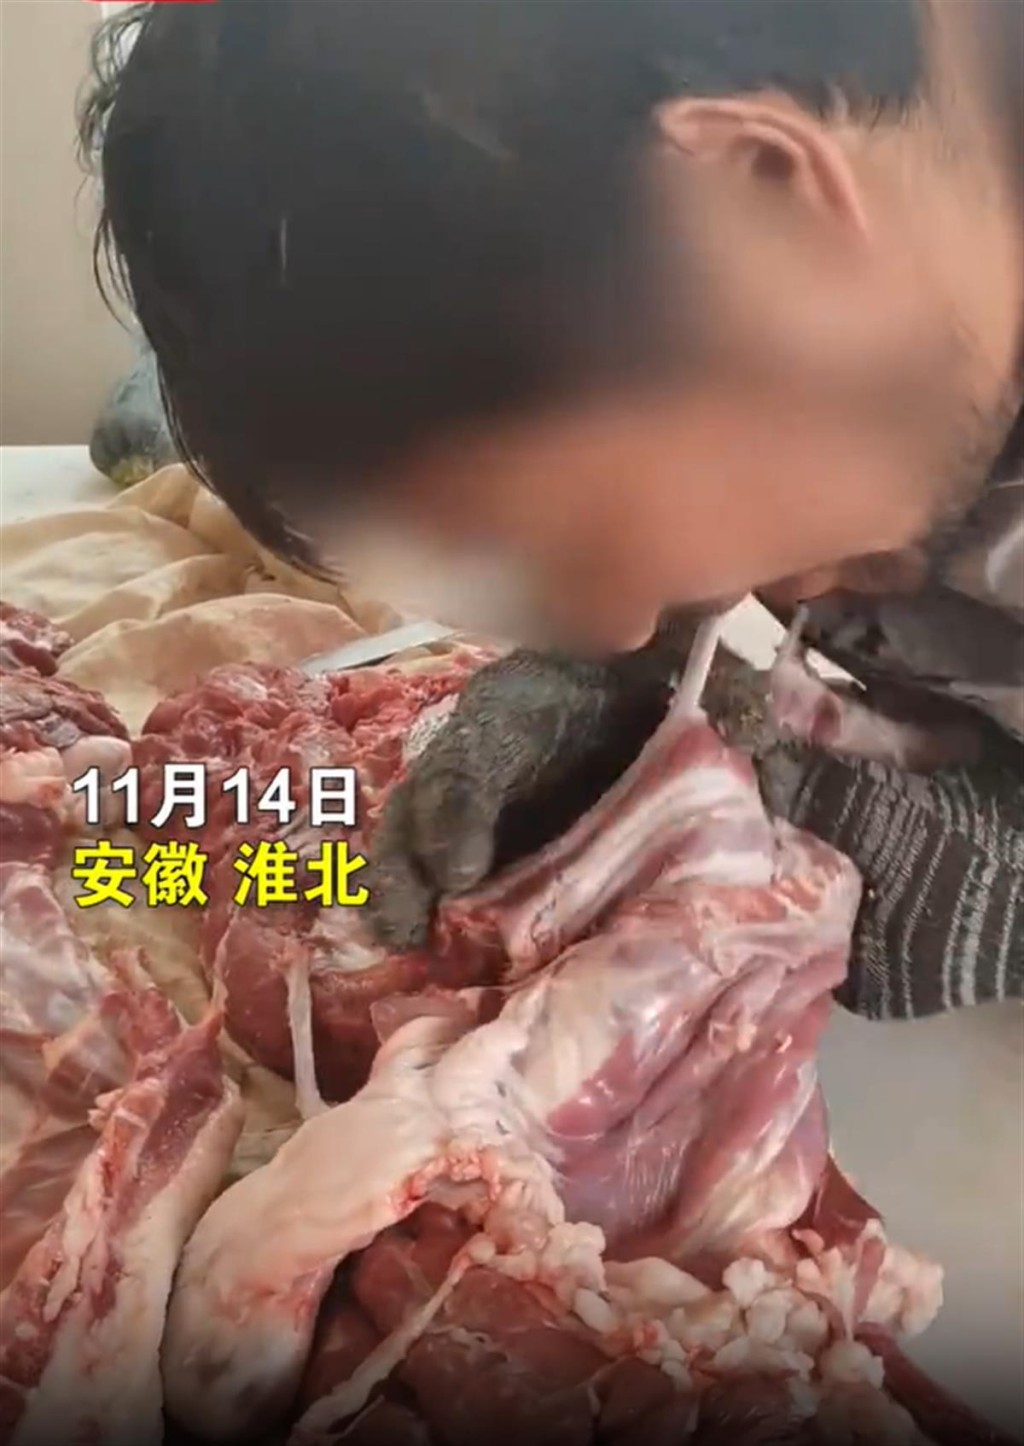 視頻顯示有肉店店員用嘴剔肉，並稱是傳統工藝。